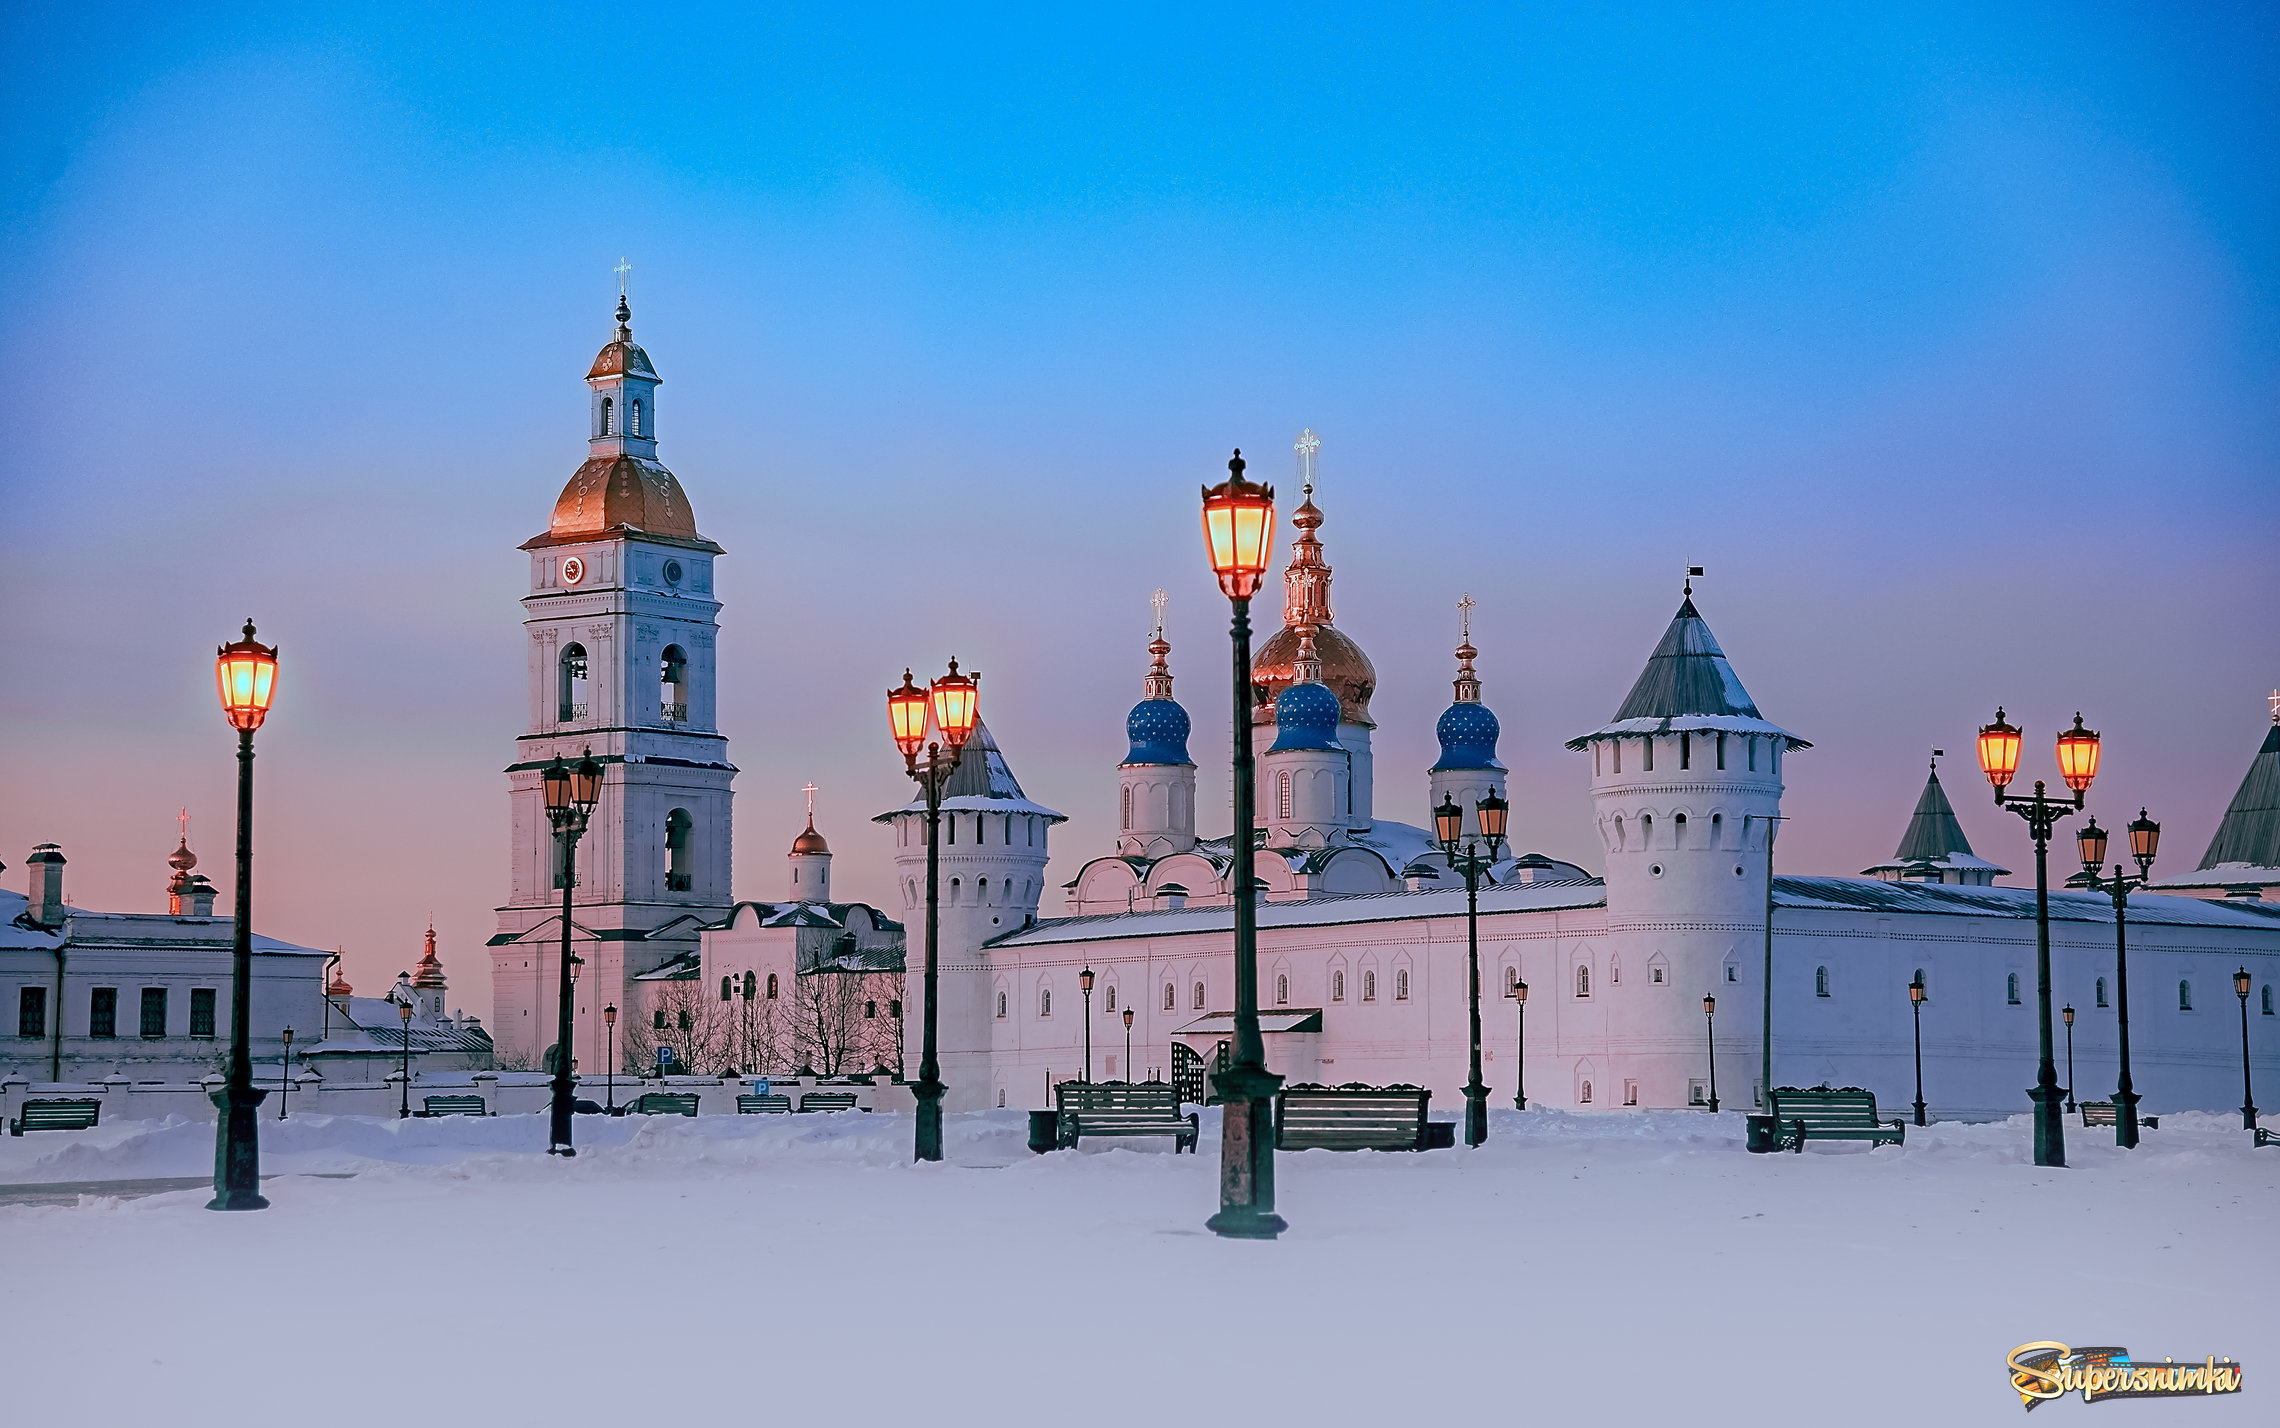 Утро красит нежным светом стены древнего кремля.